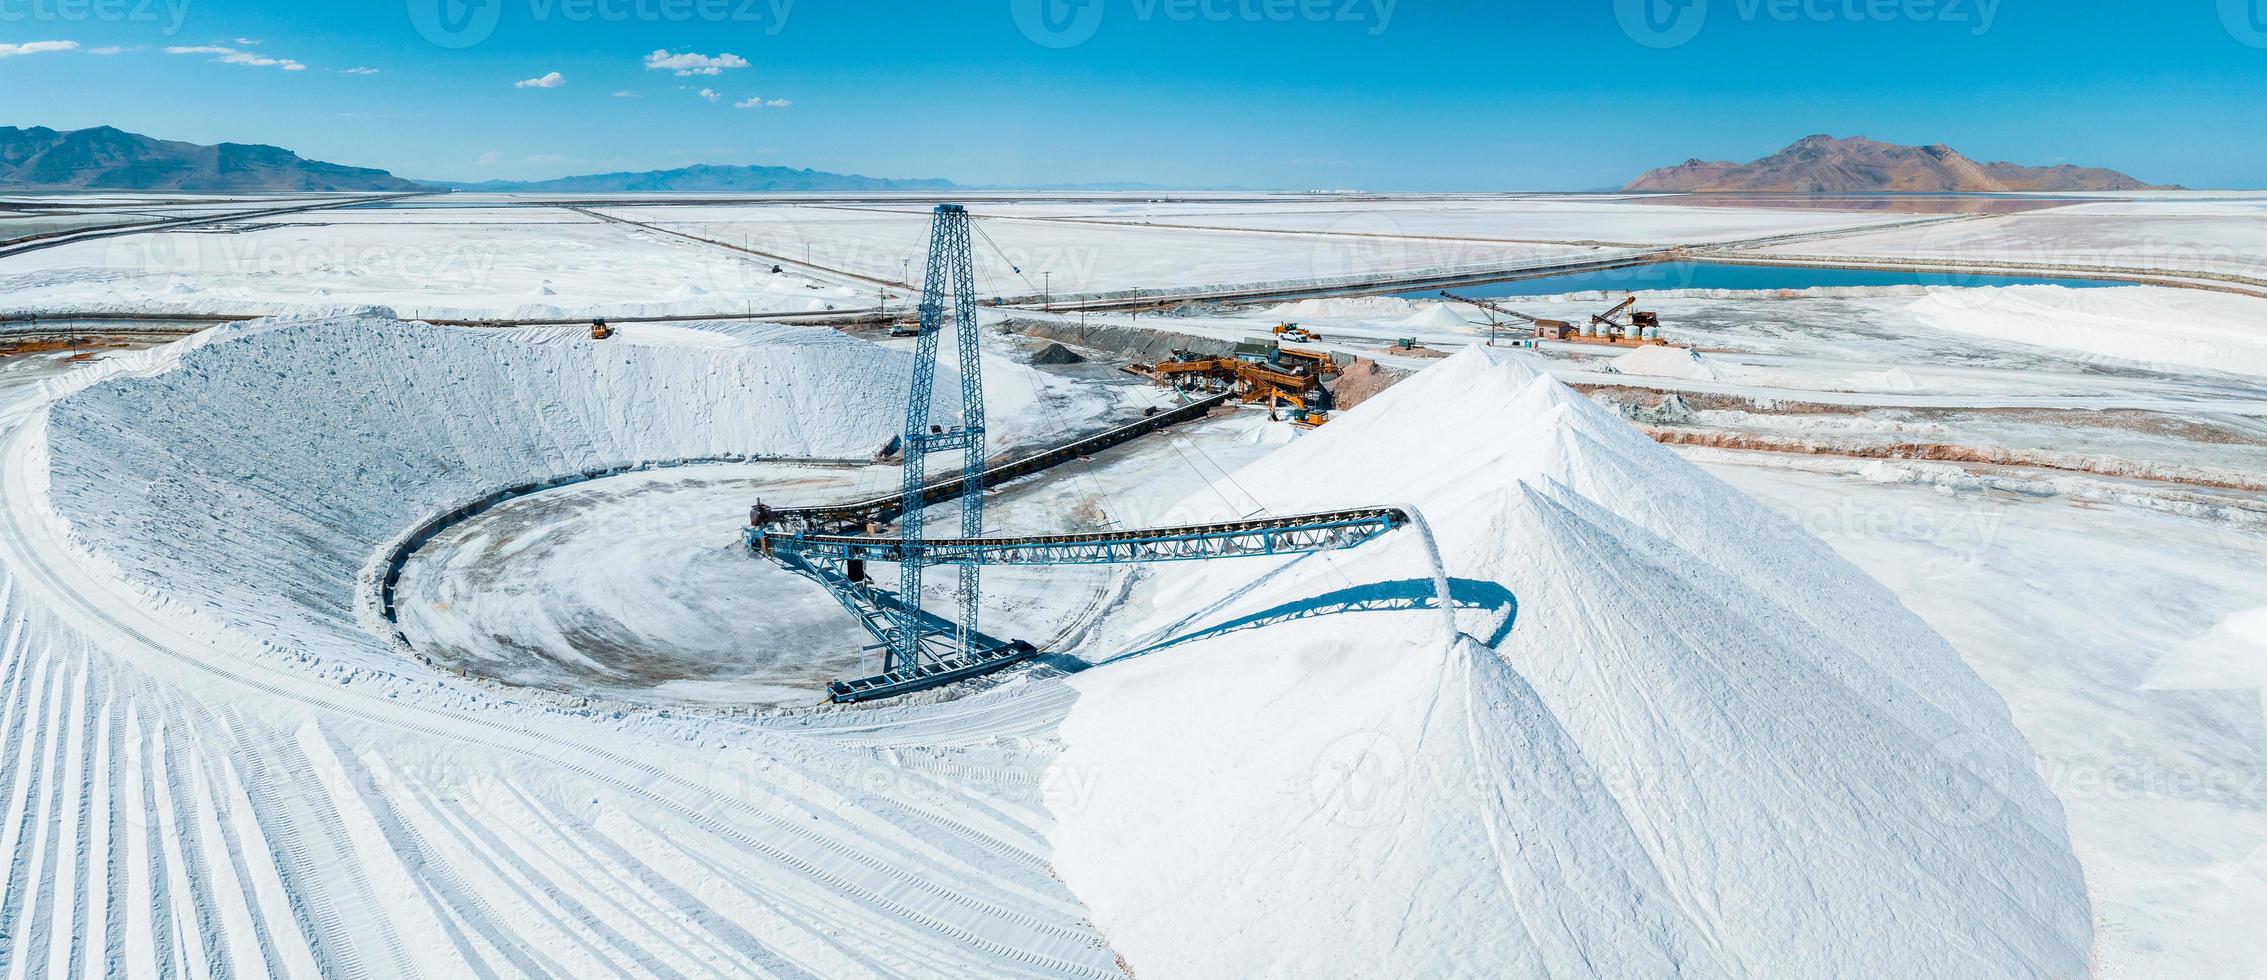 salt lake city, paisaje de utah con fábrica de minería de sal del desierto foto